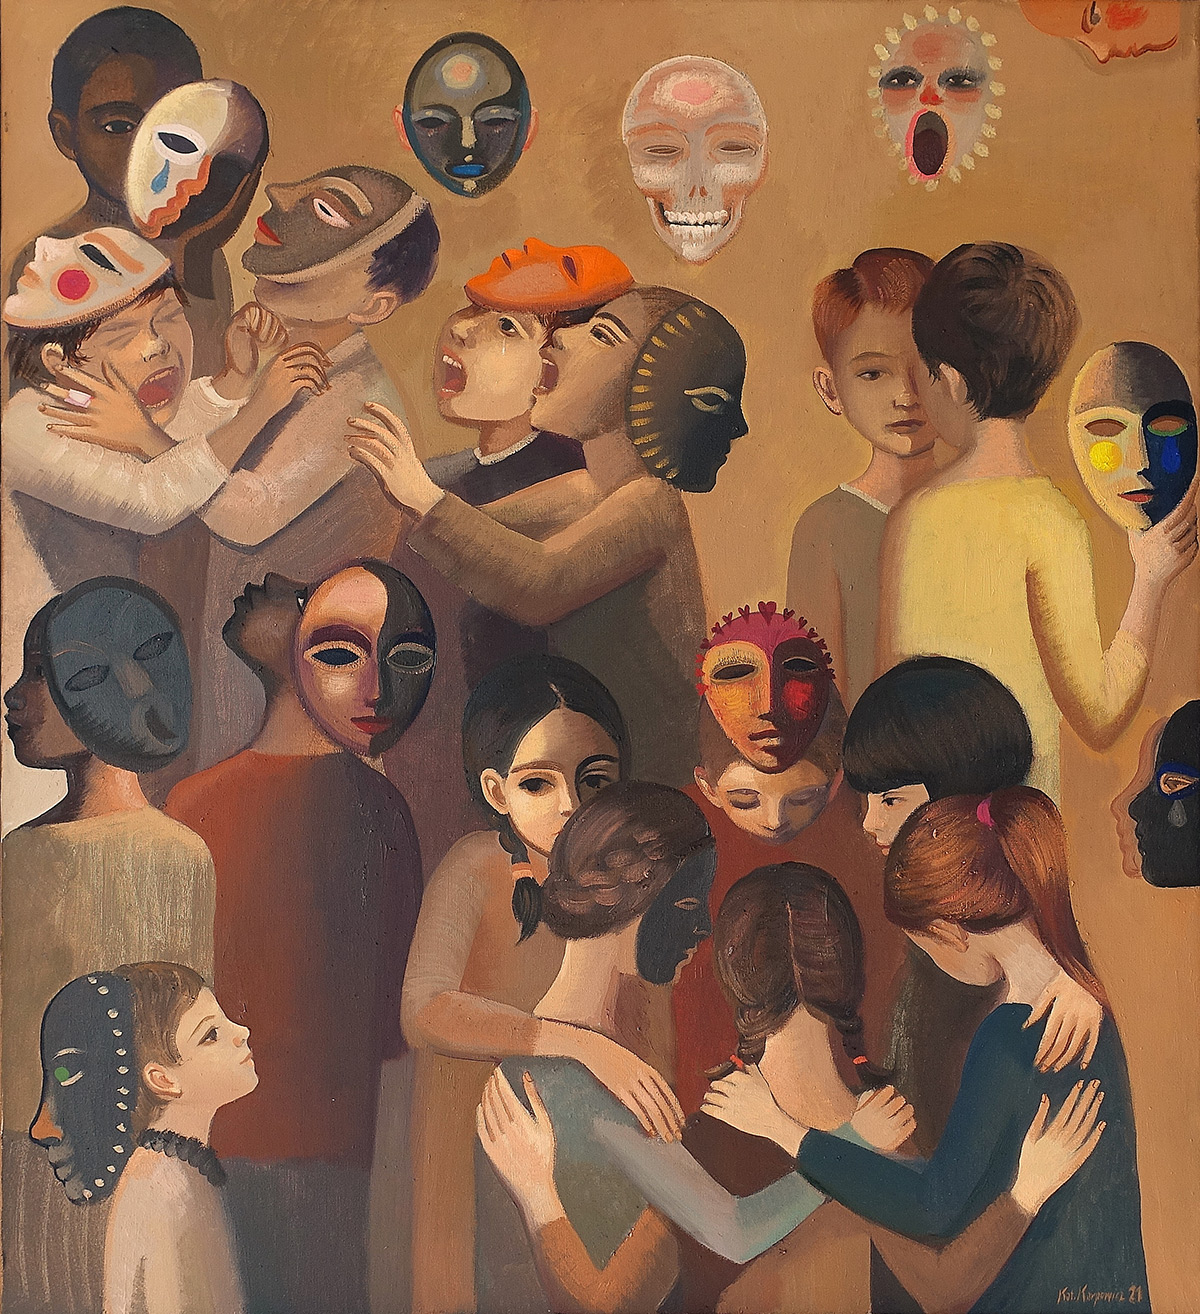 Katarzyna Karpowicz - Children and masks II (Oil on Canvas | Größe: 106 x 116 cm | Preis: 25000 PLN)